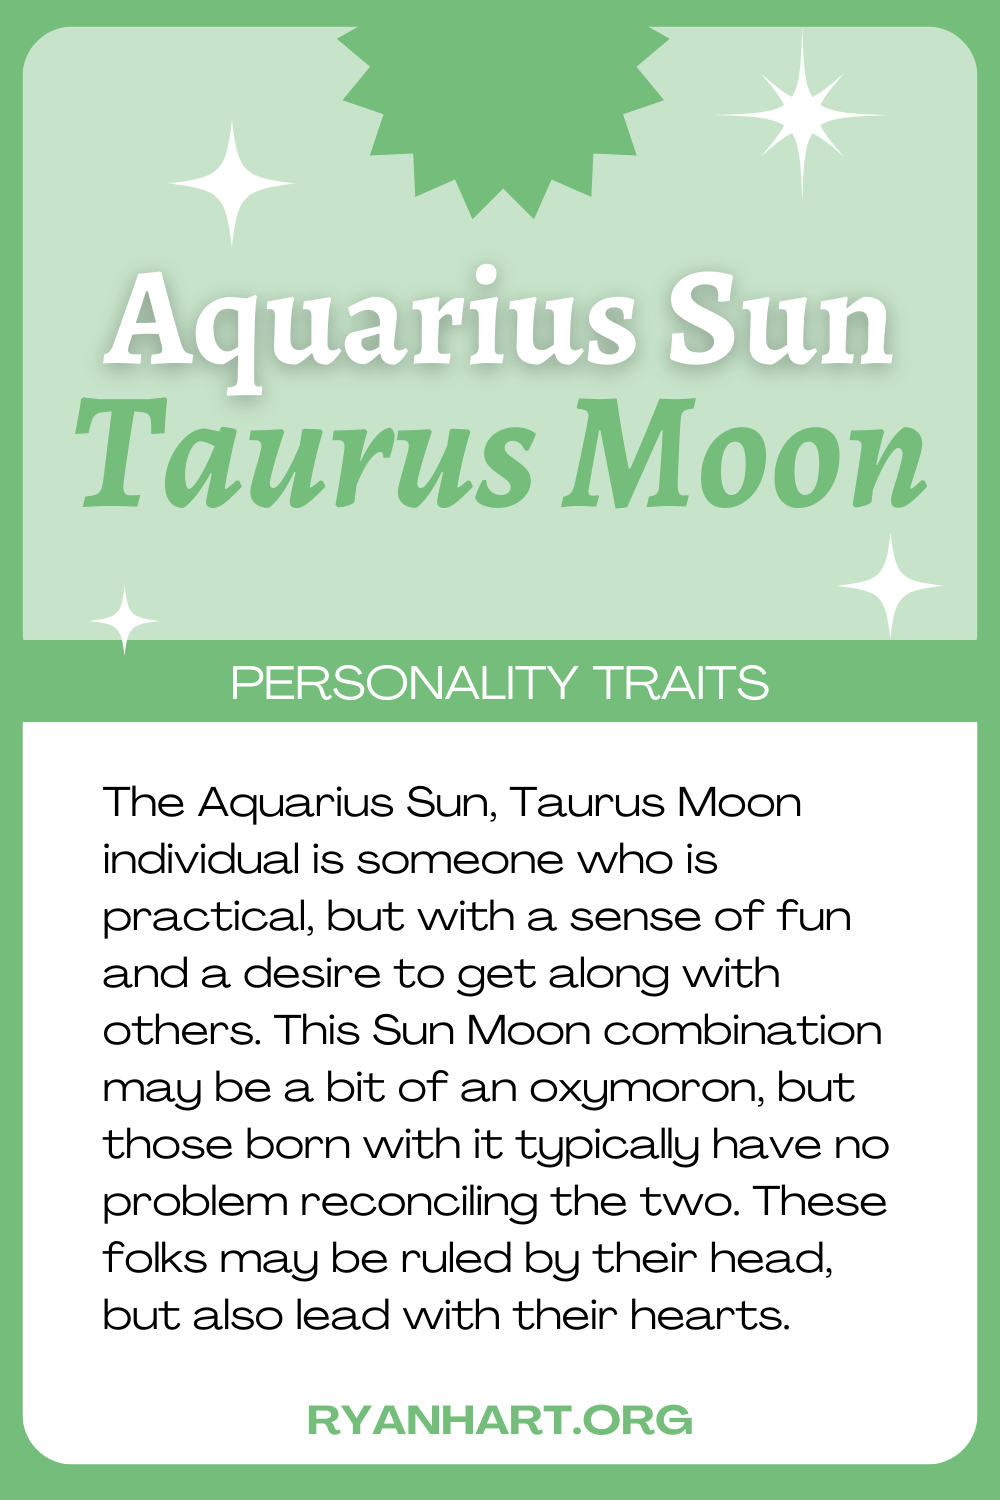 Aquarius Sun Taurus Moon Description